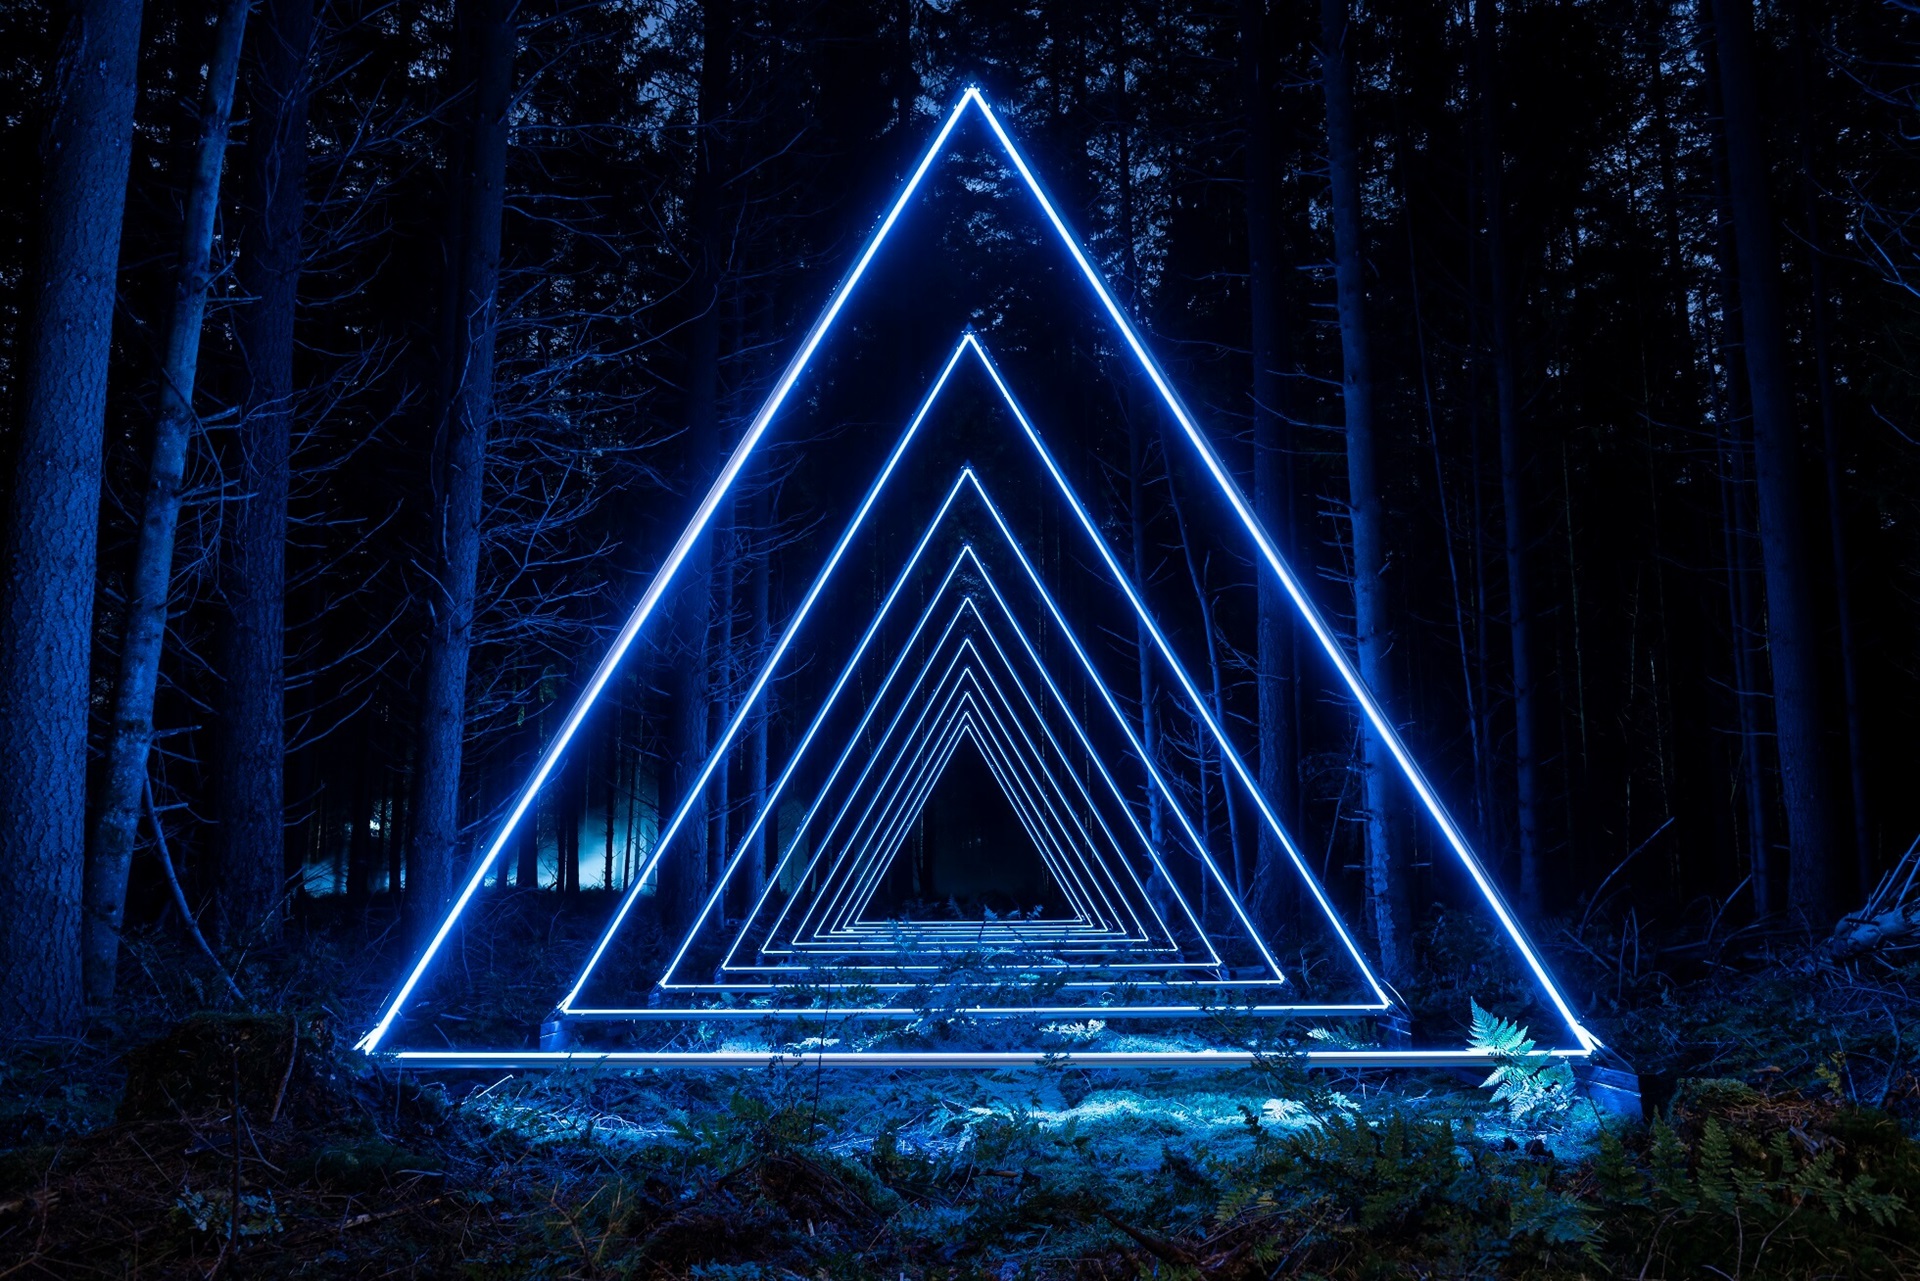 Lumières bleues, triangulaires et bien éclairées dans une forêt sombre